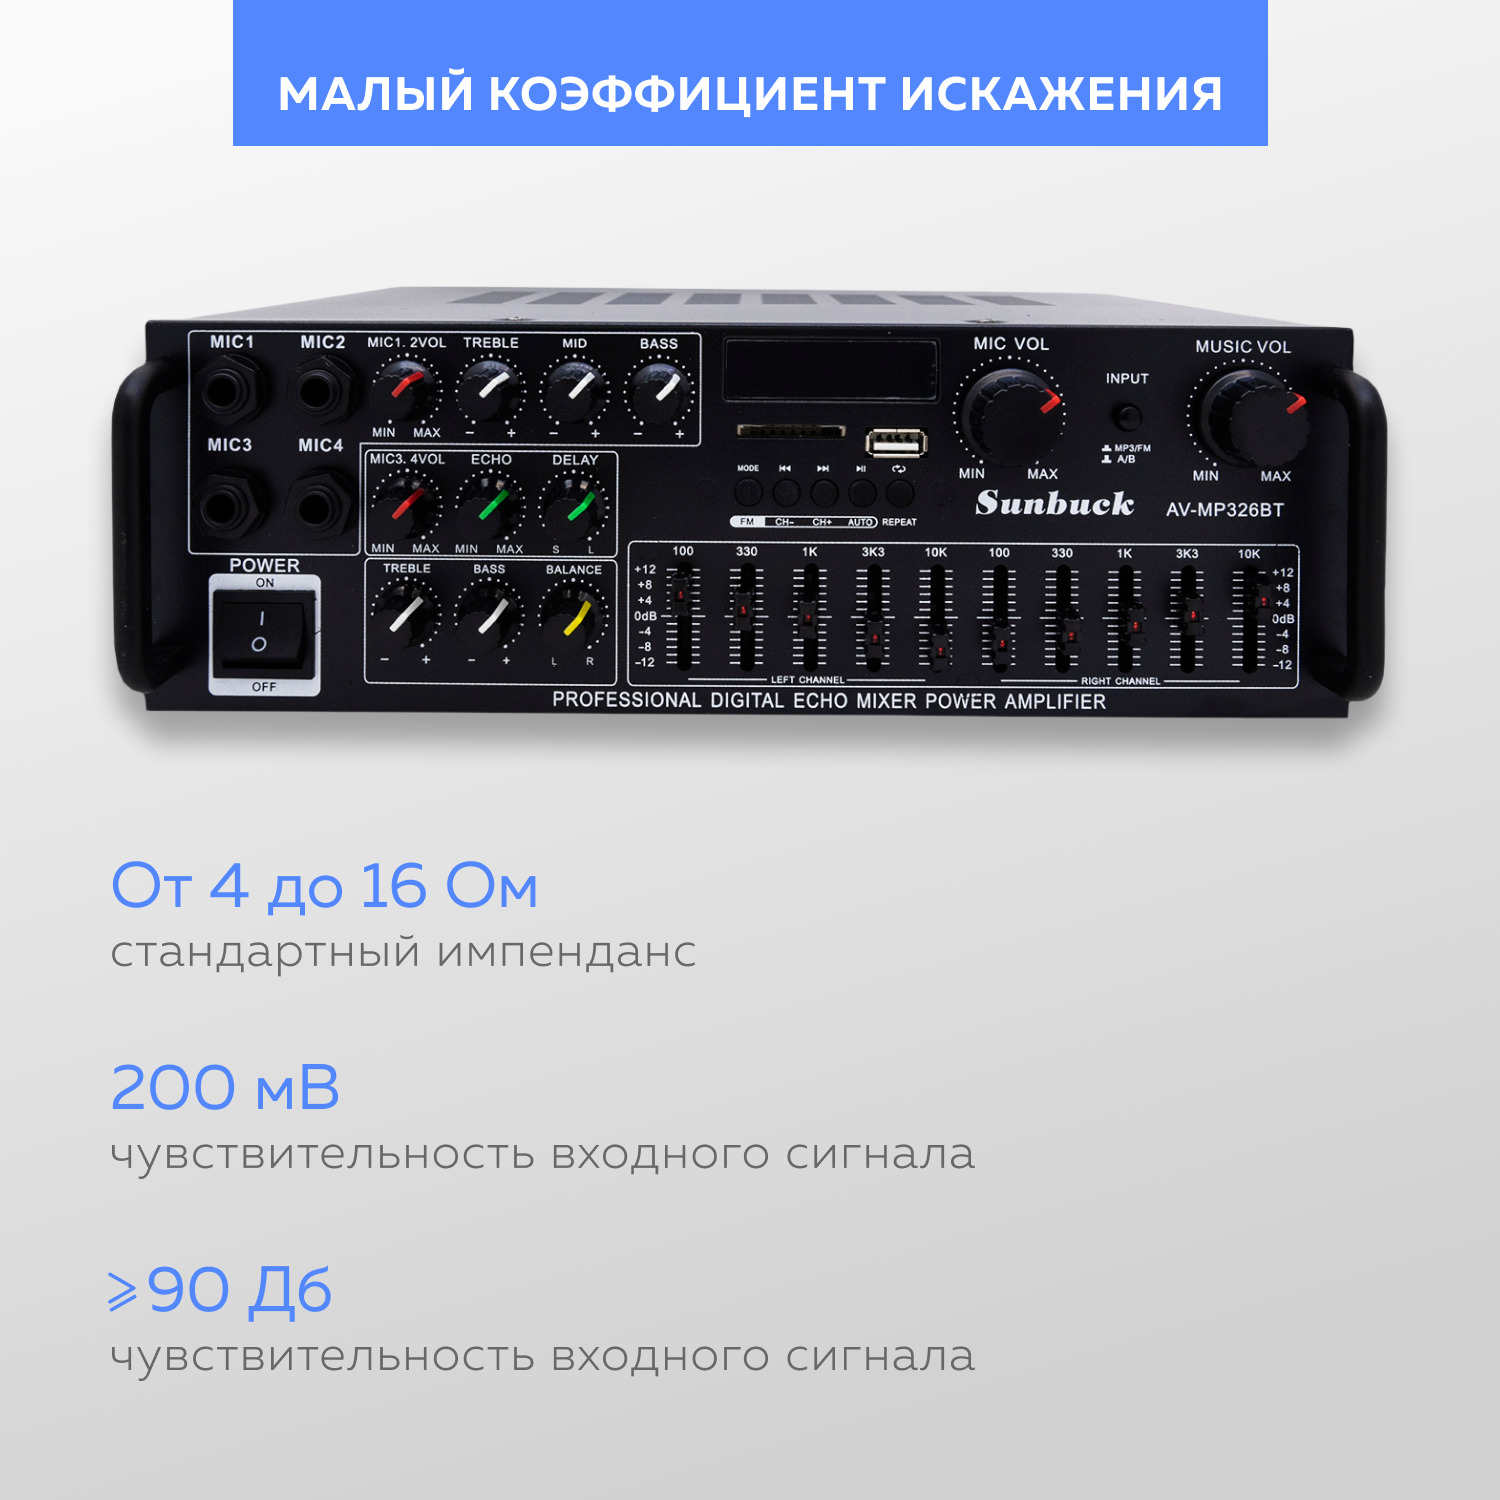 Av mp326bt. Av-mp325bt усилитель Sunbuck. Аудио усилитель звука Bluetooth Sunbuck av-298bt (SD, USB). Sunbuck 326bt усилитель. Sunbuck av-mp326bt Bluetooth.